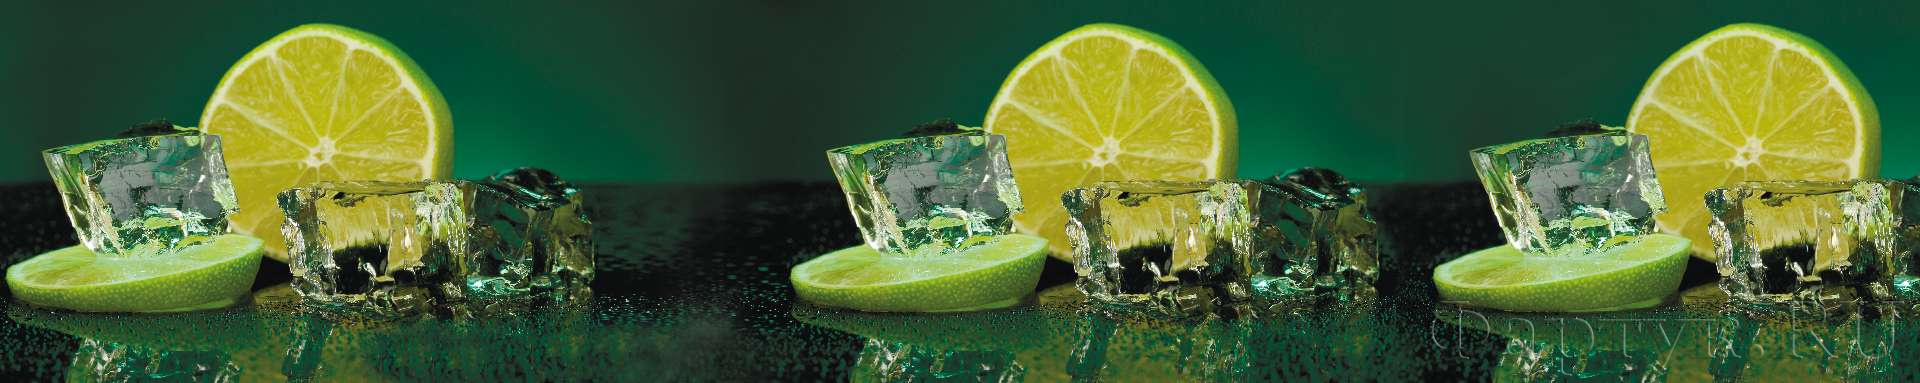 Лимон и лед на зеленом фоне